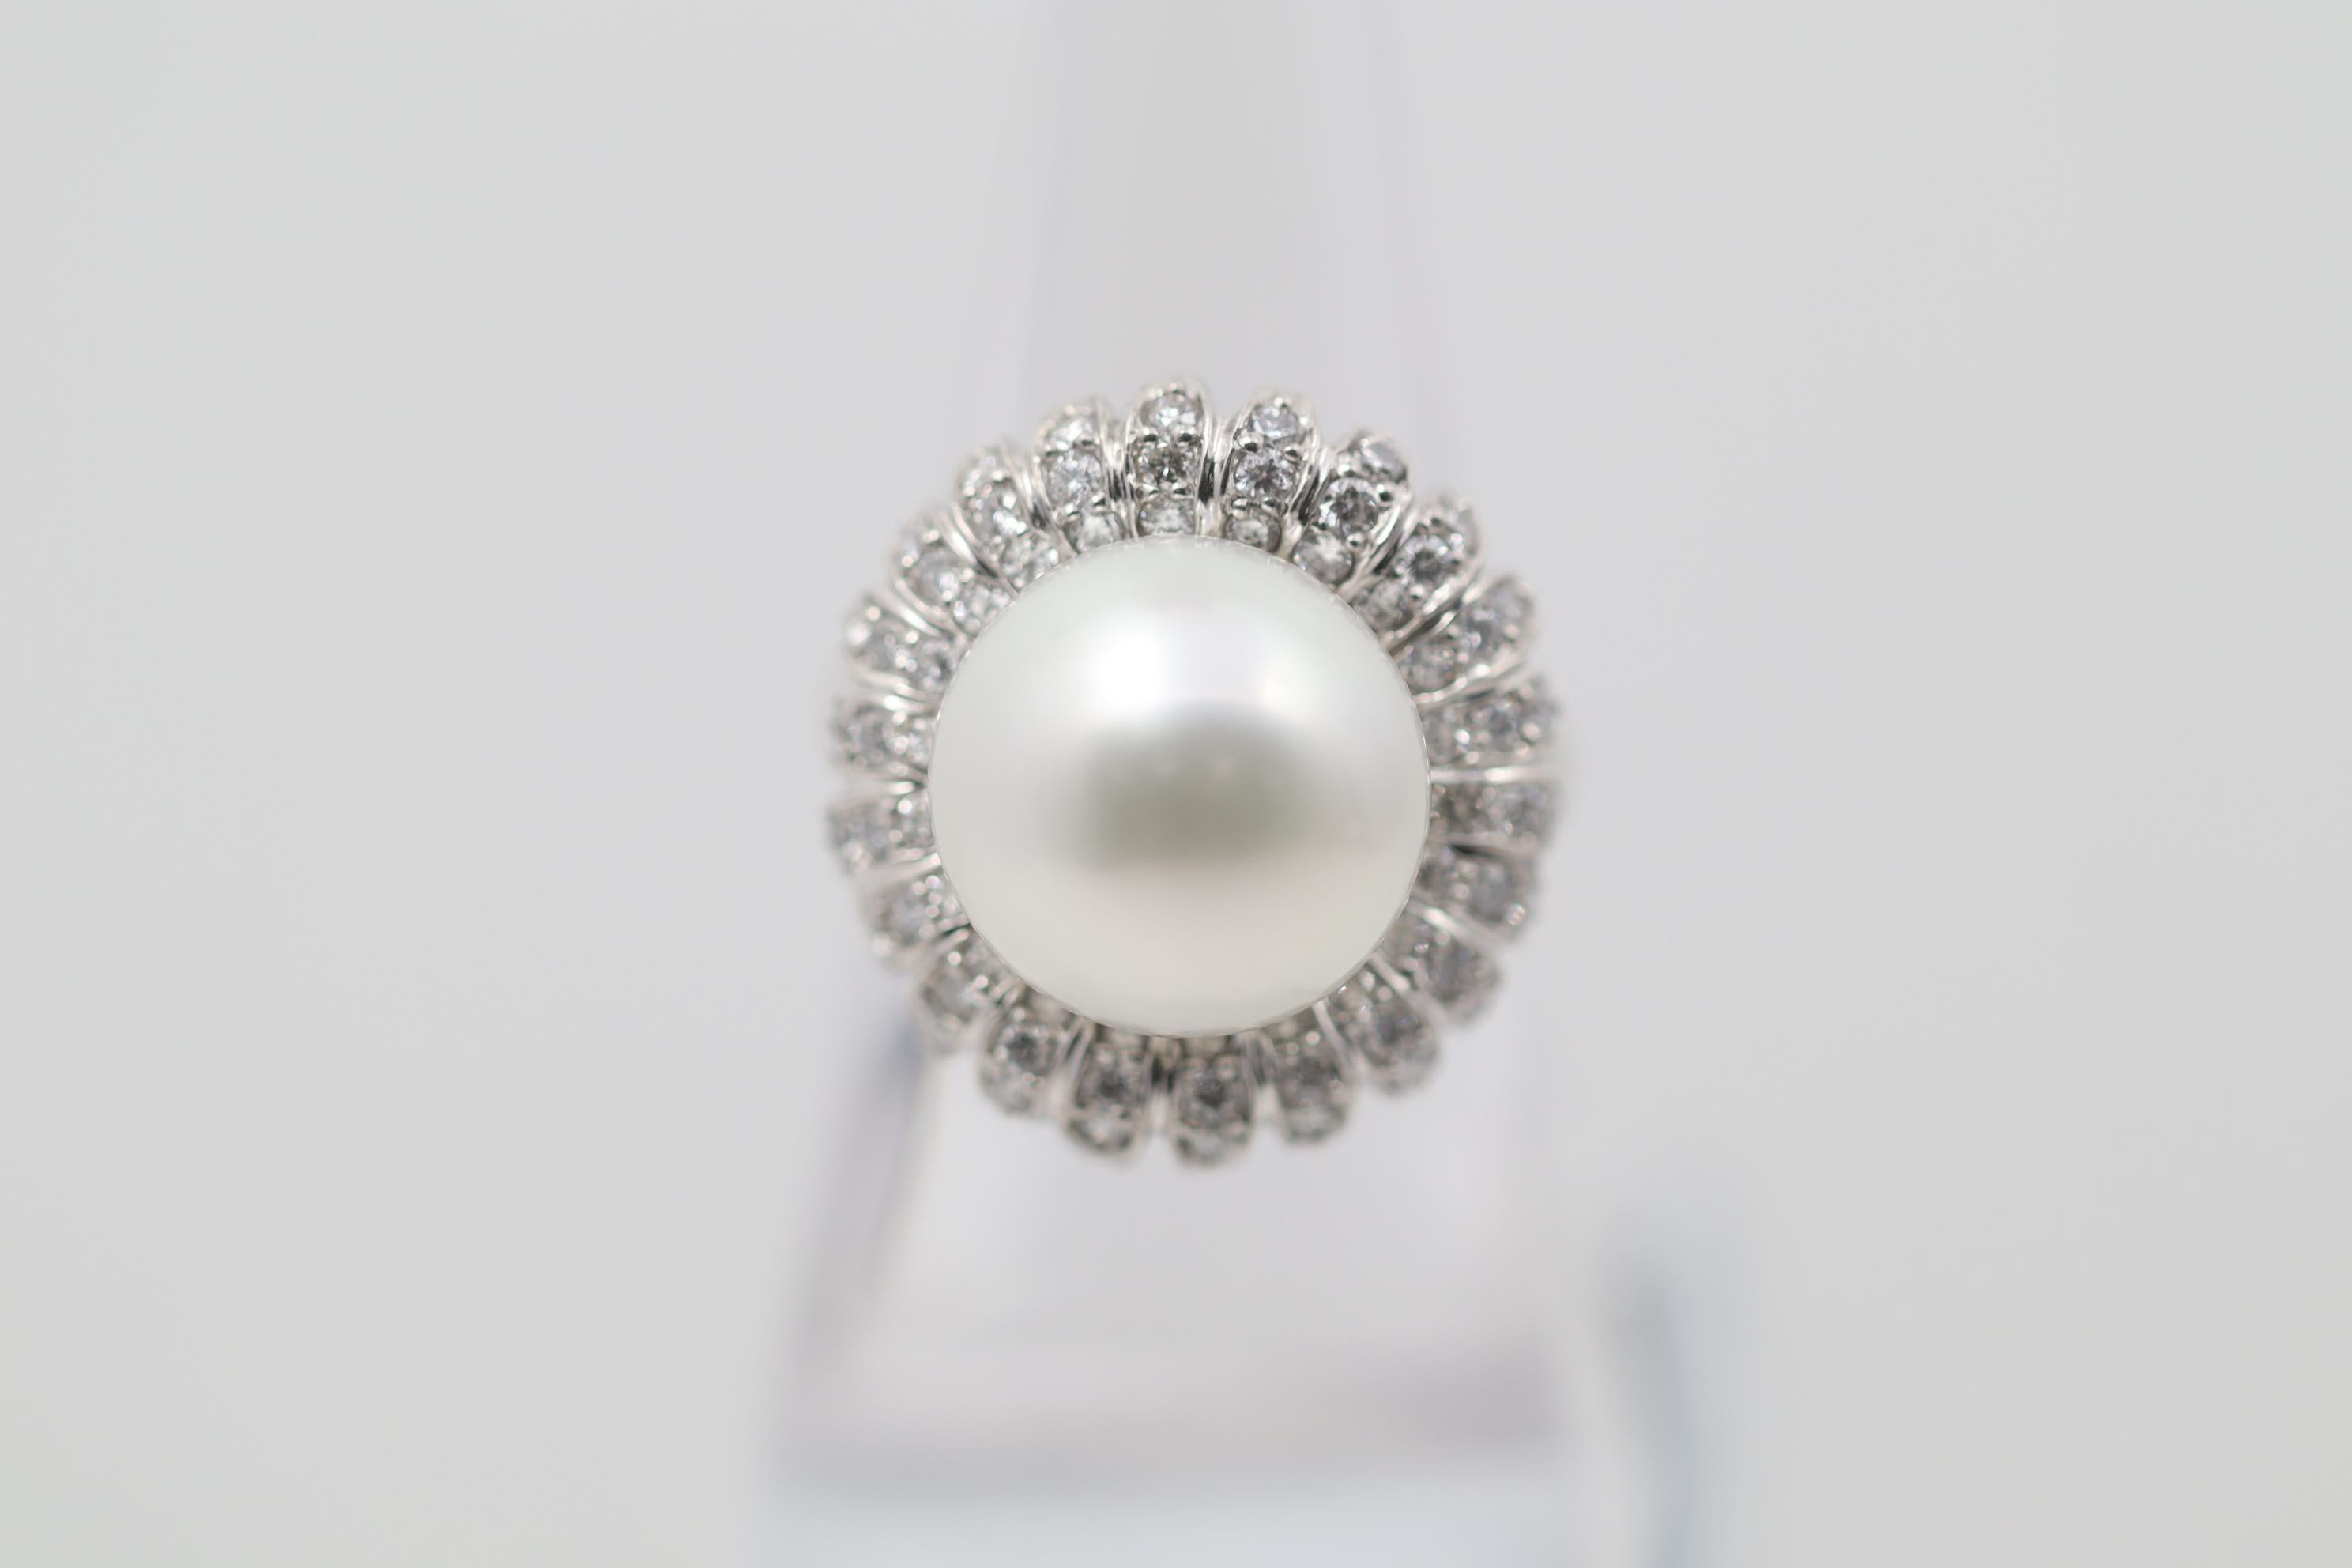 Ravissante bague à fleurs en perles des mers du Sud et diamants. La perle mesure 13 mm, est très brillante et ne présente pas d'imperfections. Elle est rehaussée de 0,86 carats de diamants sertis autour de la perle dans un motif floral. Fabriqué à